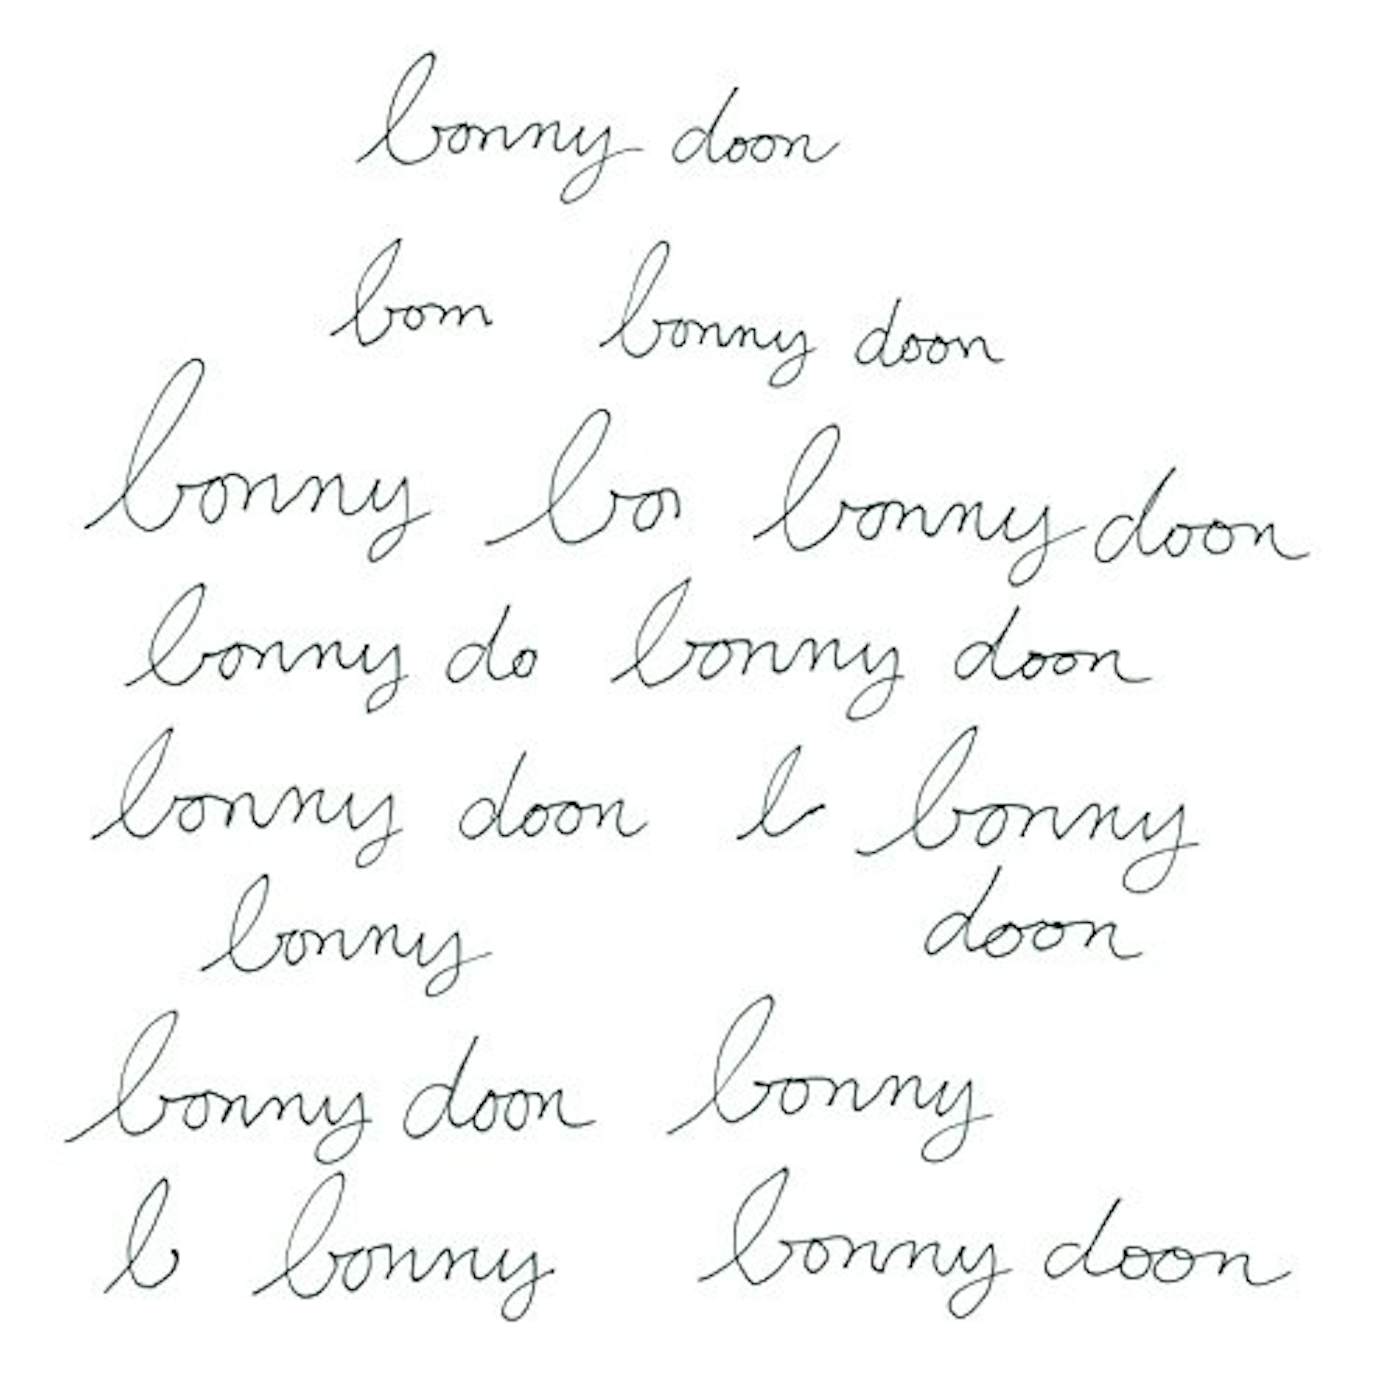 Bonny Doon Vinyl Record